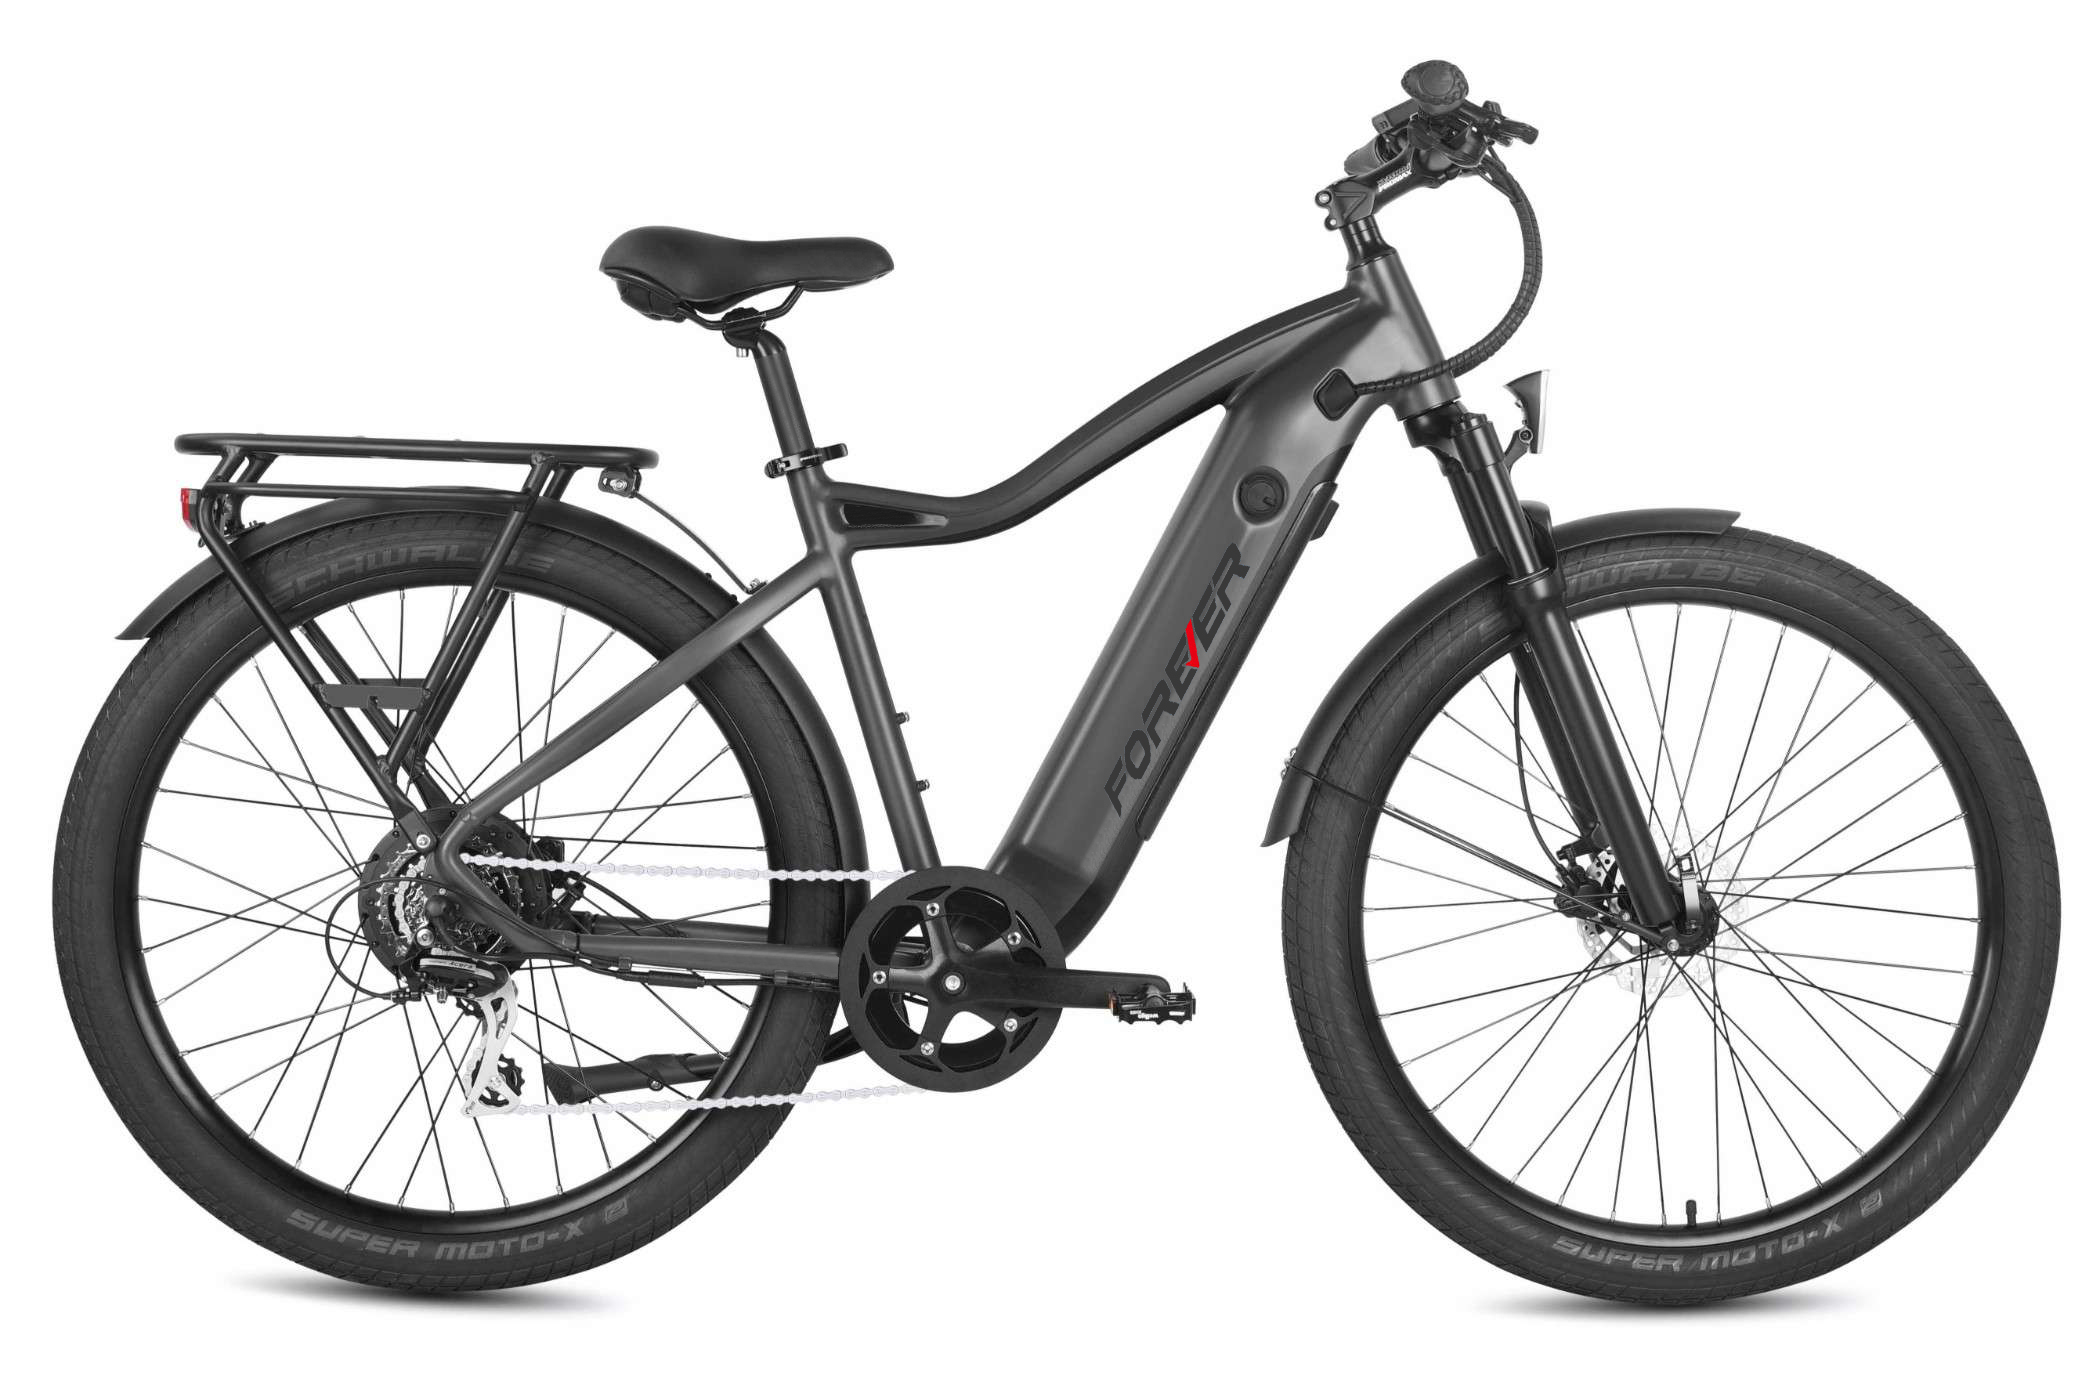 SFEC1026 Off Road Electric Bike | Graphite Gray